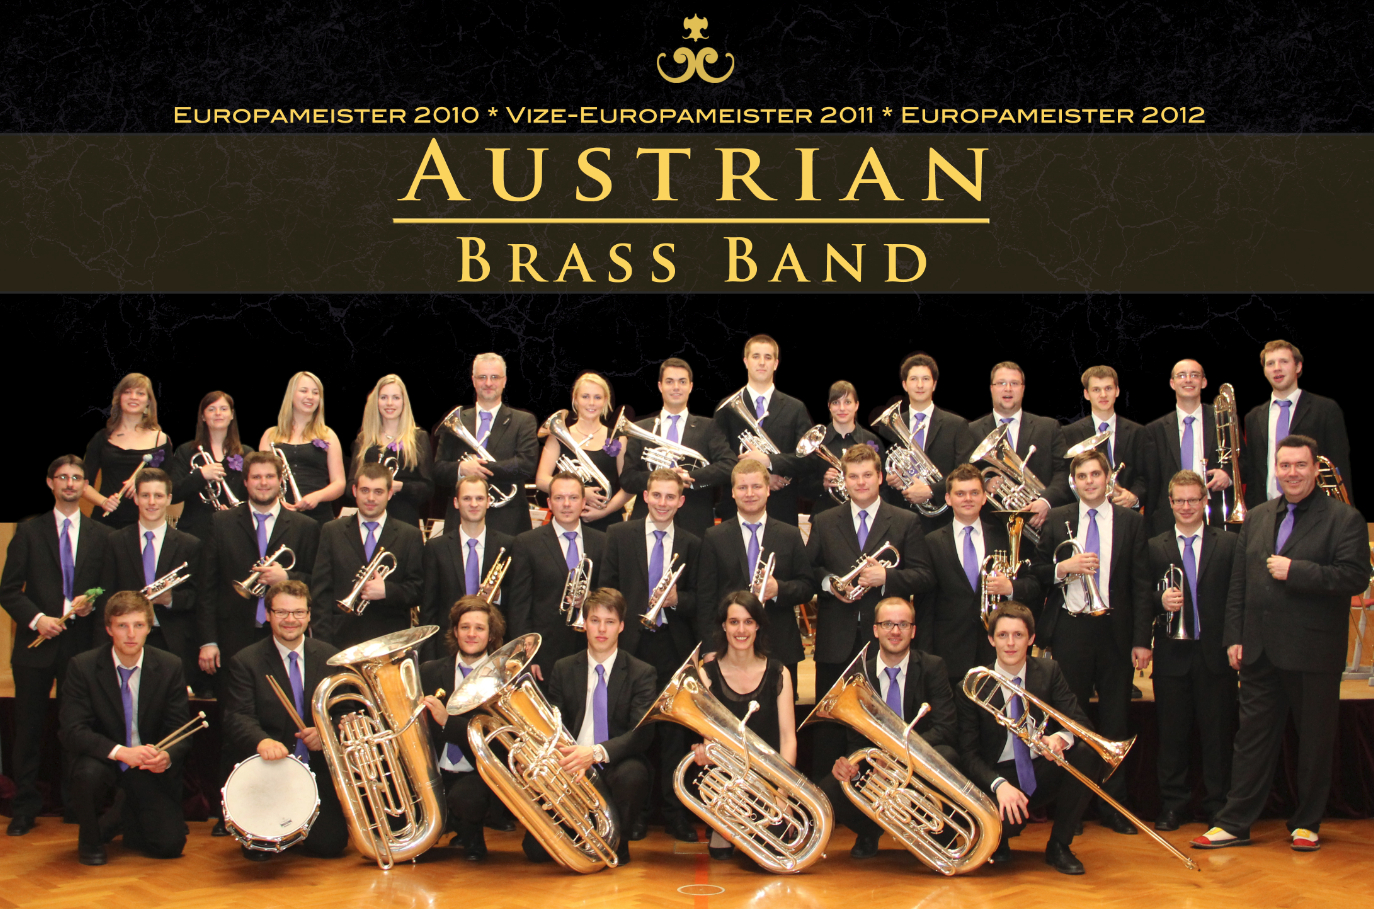 http://www.austrian-brass-band.com/wp-content/uploads/2014/09/ABB-Gruppenfoto-HP.jpg